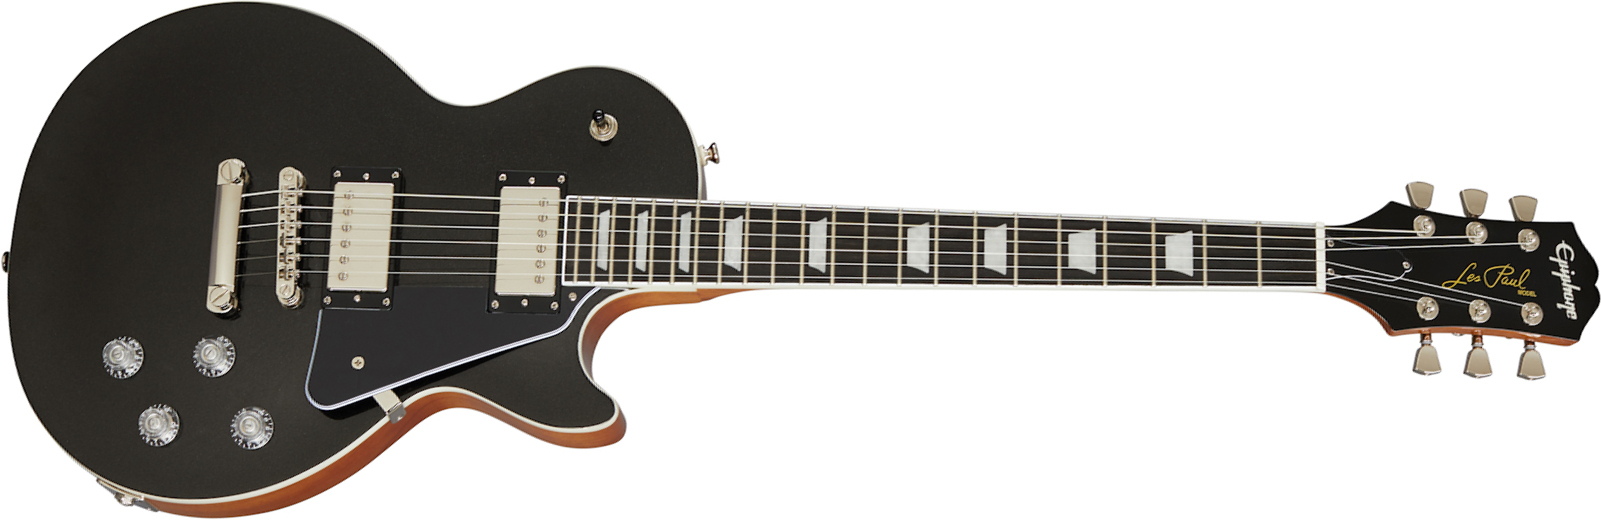 Epiphone Les Paul Modern 2h Ht Eb - Graphite Black - Guitarra eléctrica de corte único. - Main picture